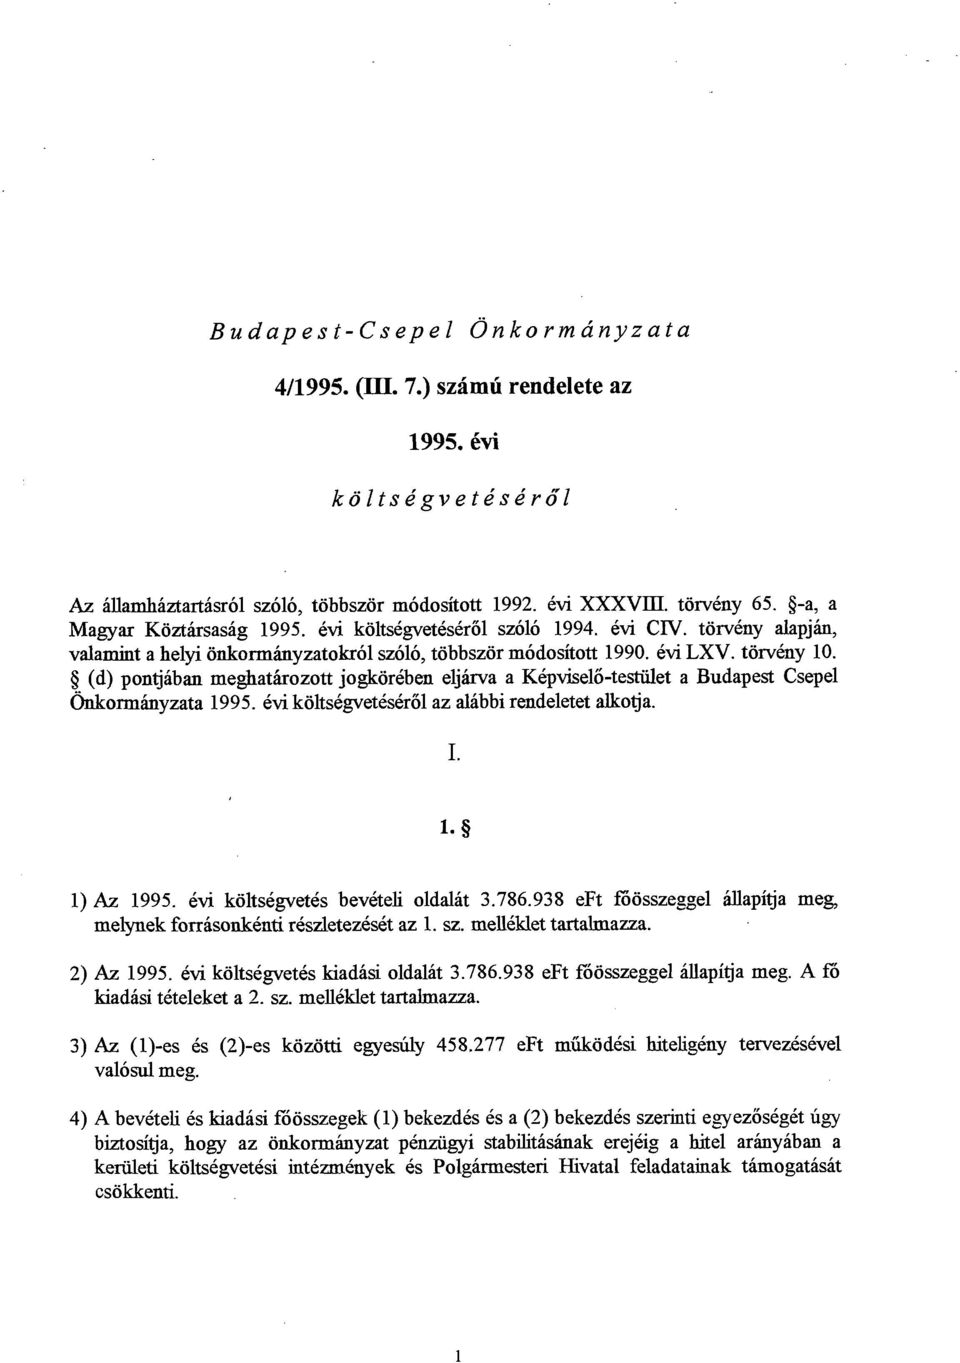 8 (d) pontjaban meghathrozott jogkorkben eljha a Kkpviselo-testiilet a Budapest Csepel 6ukormhyzata 1995. 6vi koltscgvetcsqo1 az alabbi rendeletet alkotja. 1) Az 1995.